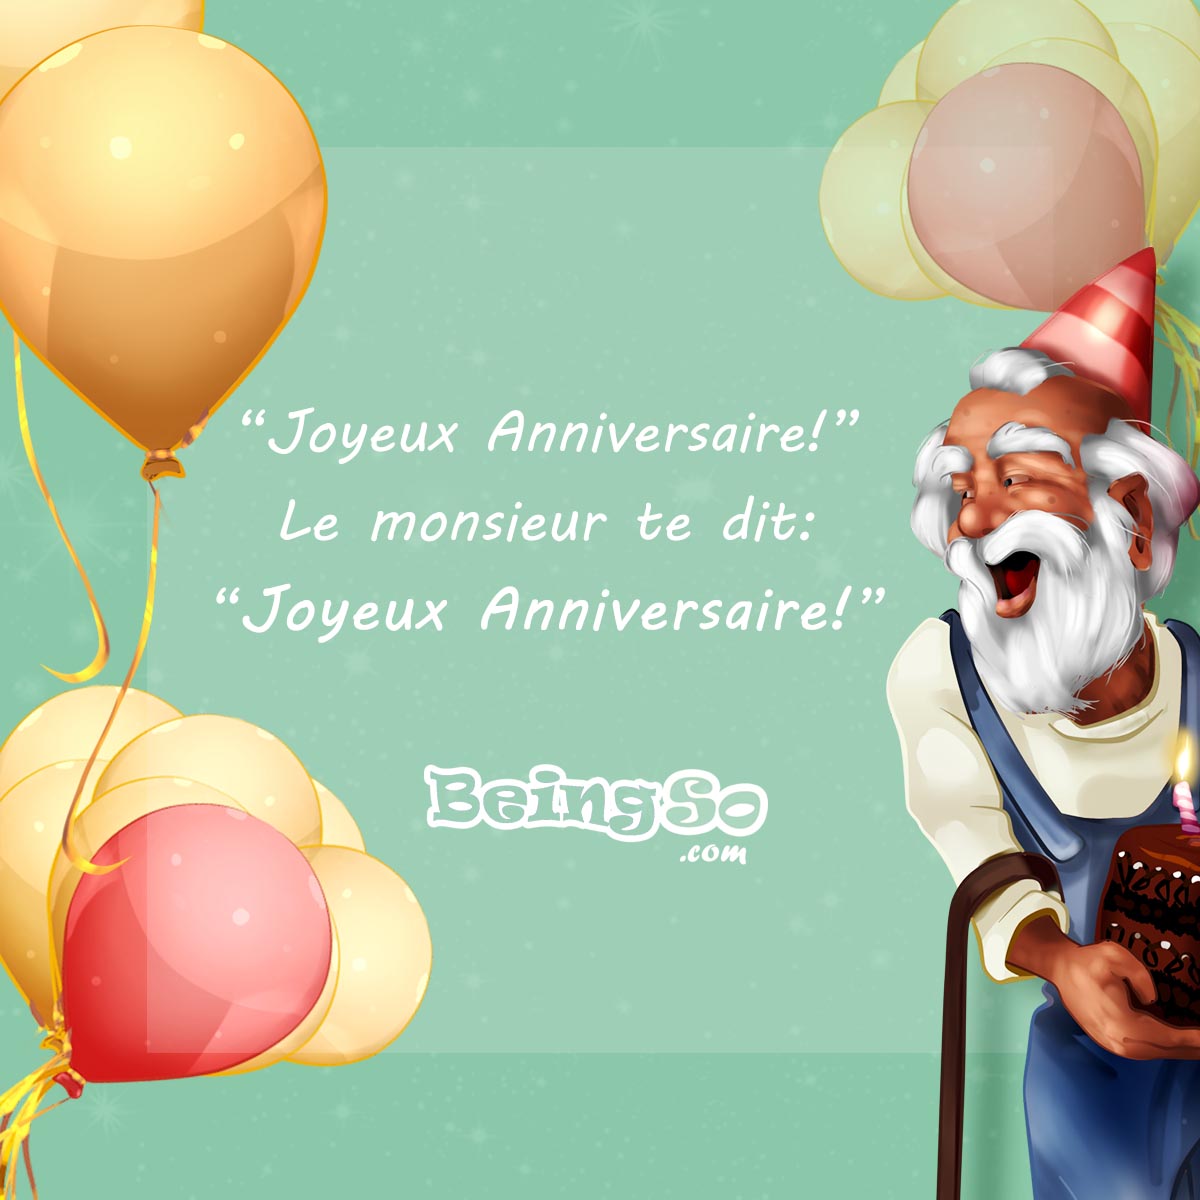 https://fr.beingso.com/images/blog/fr/article/texte-anniversaire-50-ans/joyeux-anniversaire-50-ans-humour.jpg